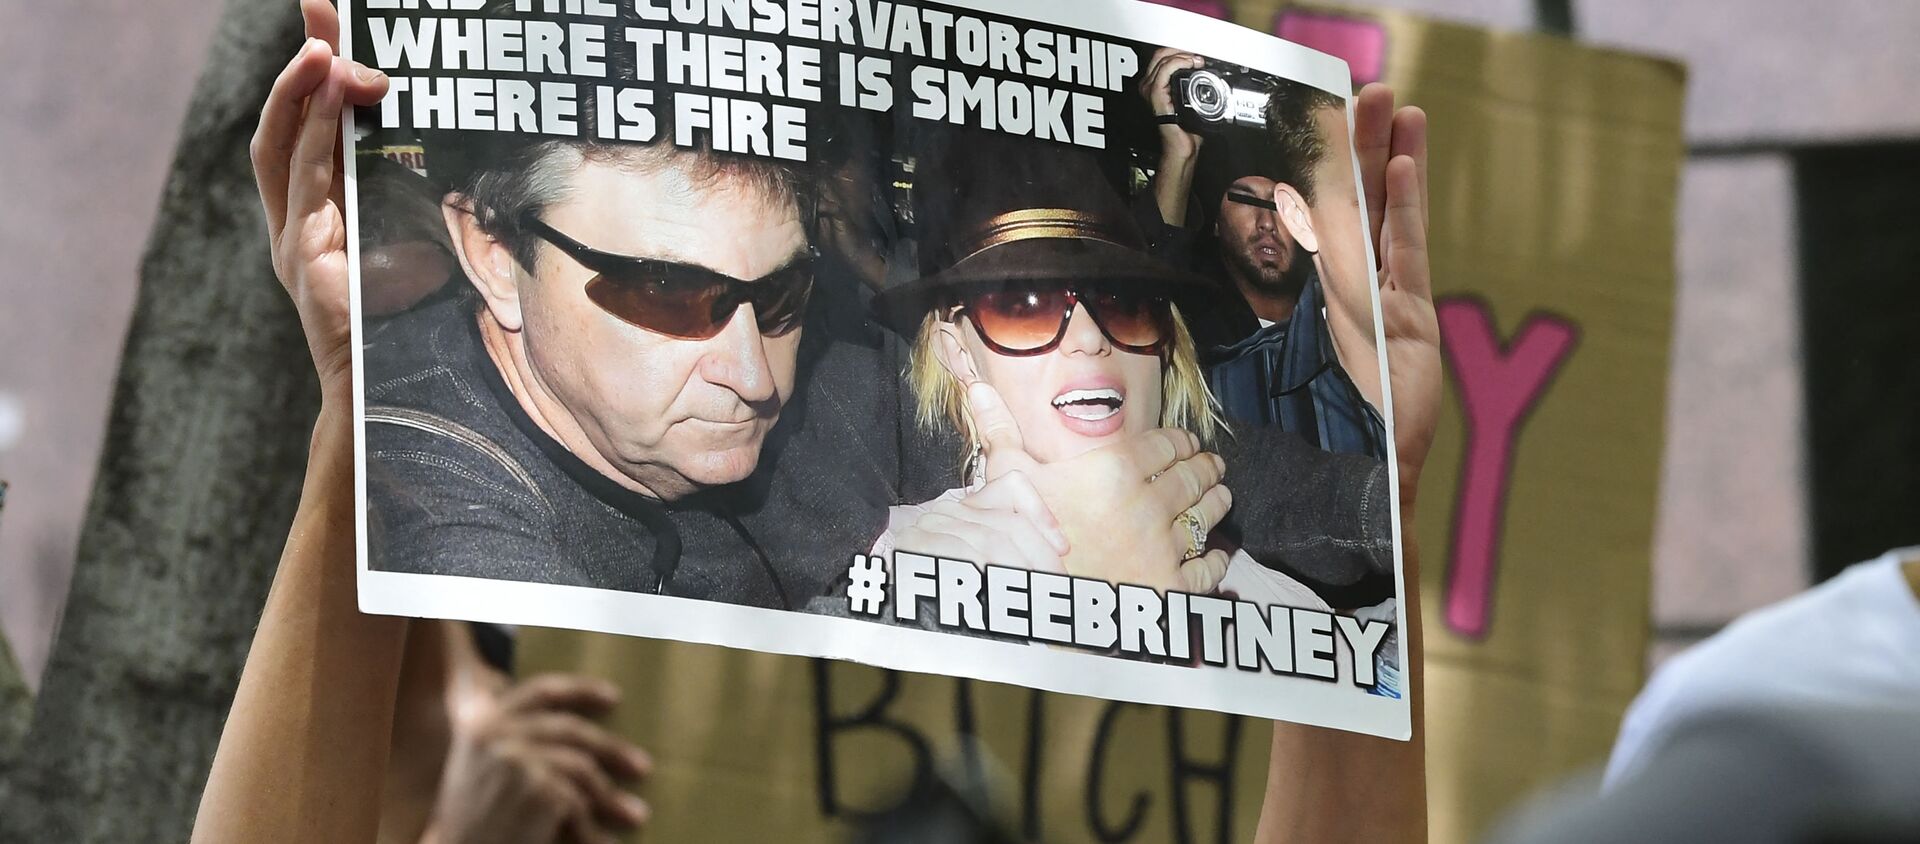 ブリトニー・スピアーズさんの成年後見からの自由を求める運動「Free Britney」 - Sputnik 日本, 1920, 05.07.2021